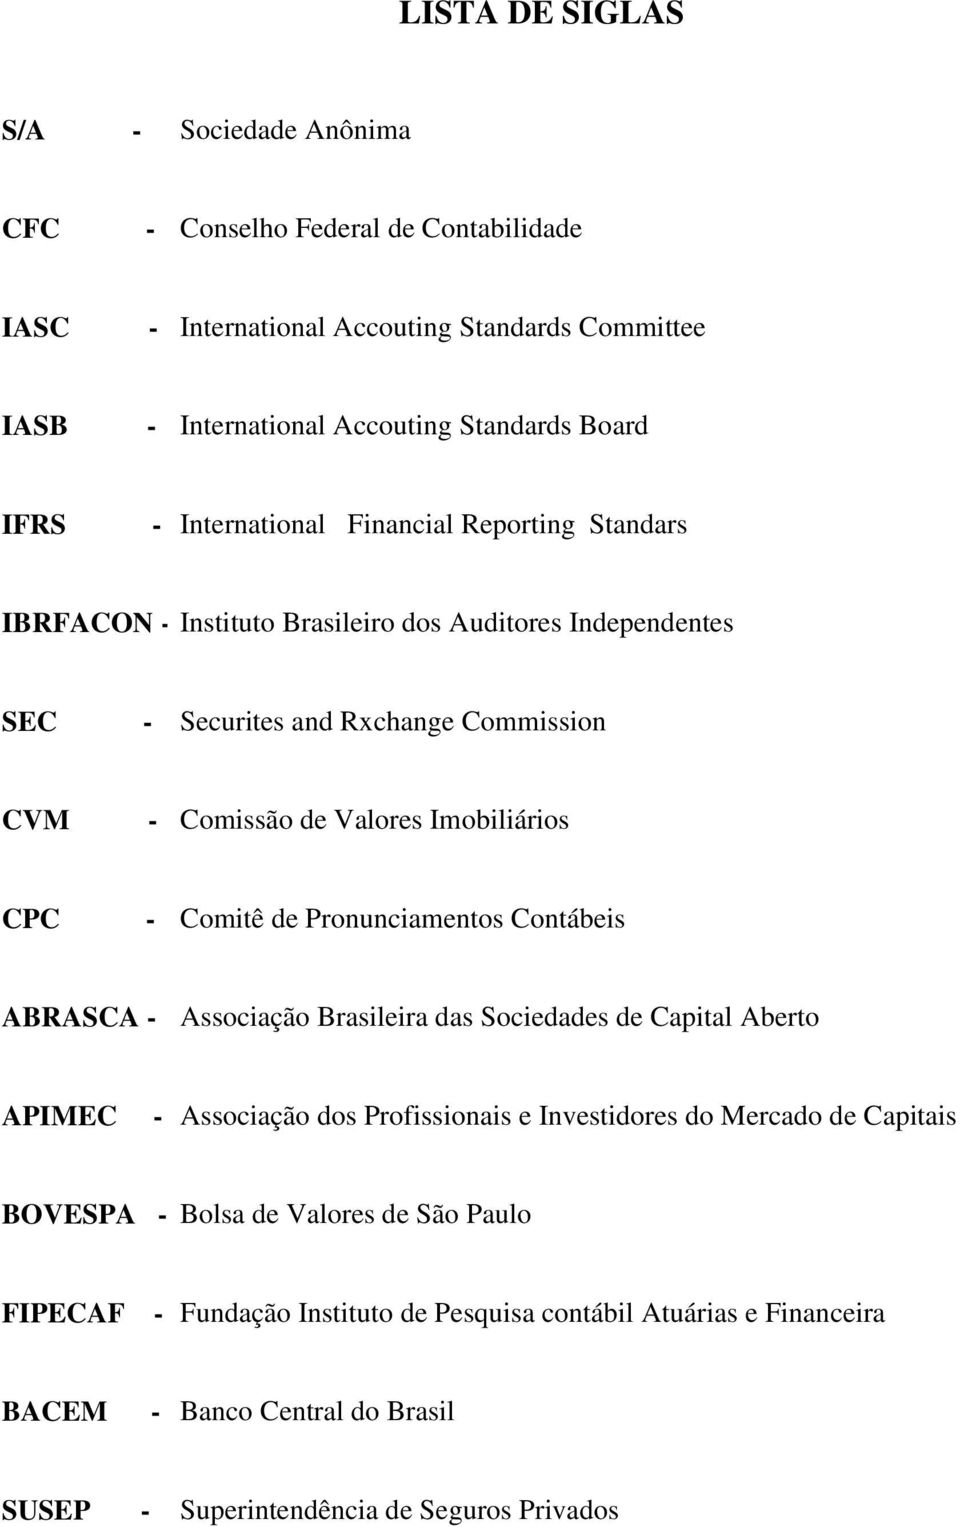 CPC - Comitê de Pronunciamentos Contábeis ABRASCA - Associação Brasileira das Sociedades de Capital Aberto APIMEC - Associação dos Profissionais e Investidores do Mercado de Capitais